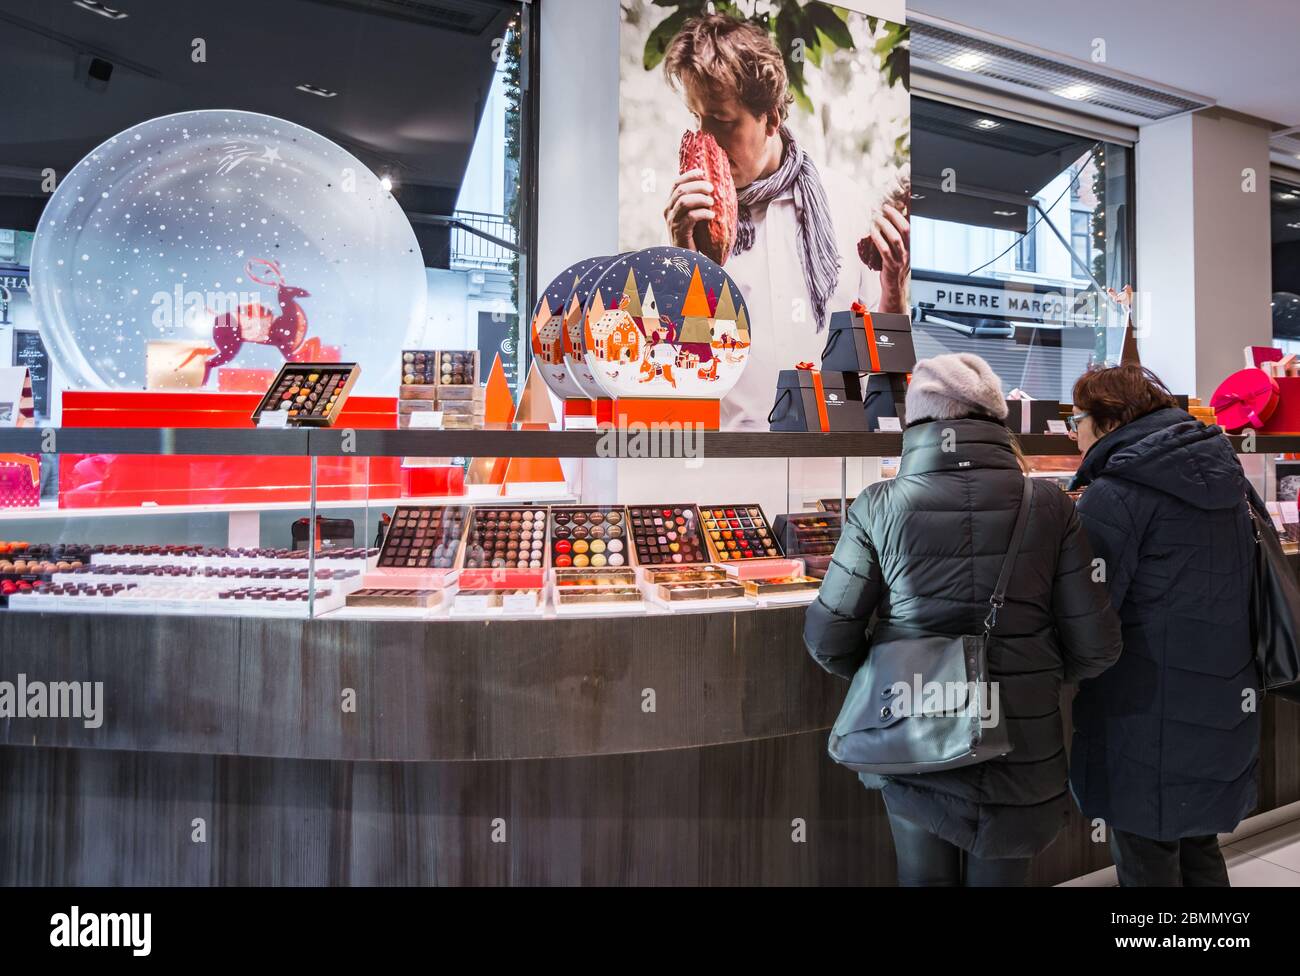 Pierre Marcolini un lussuoso negozio di cioccolato belga - interno del negozio durante la festa di Natale - Bruxelles, Belgio - gennaio 2020 Foto Stock